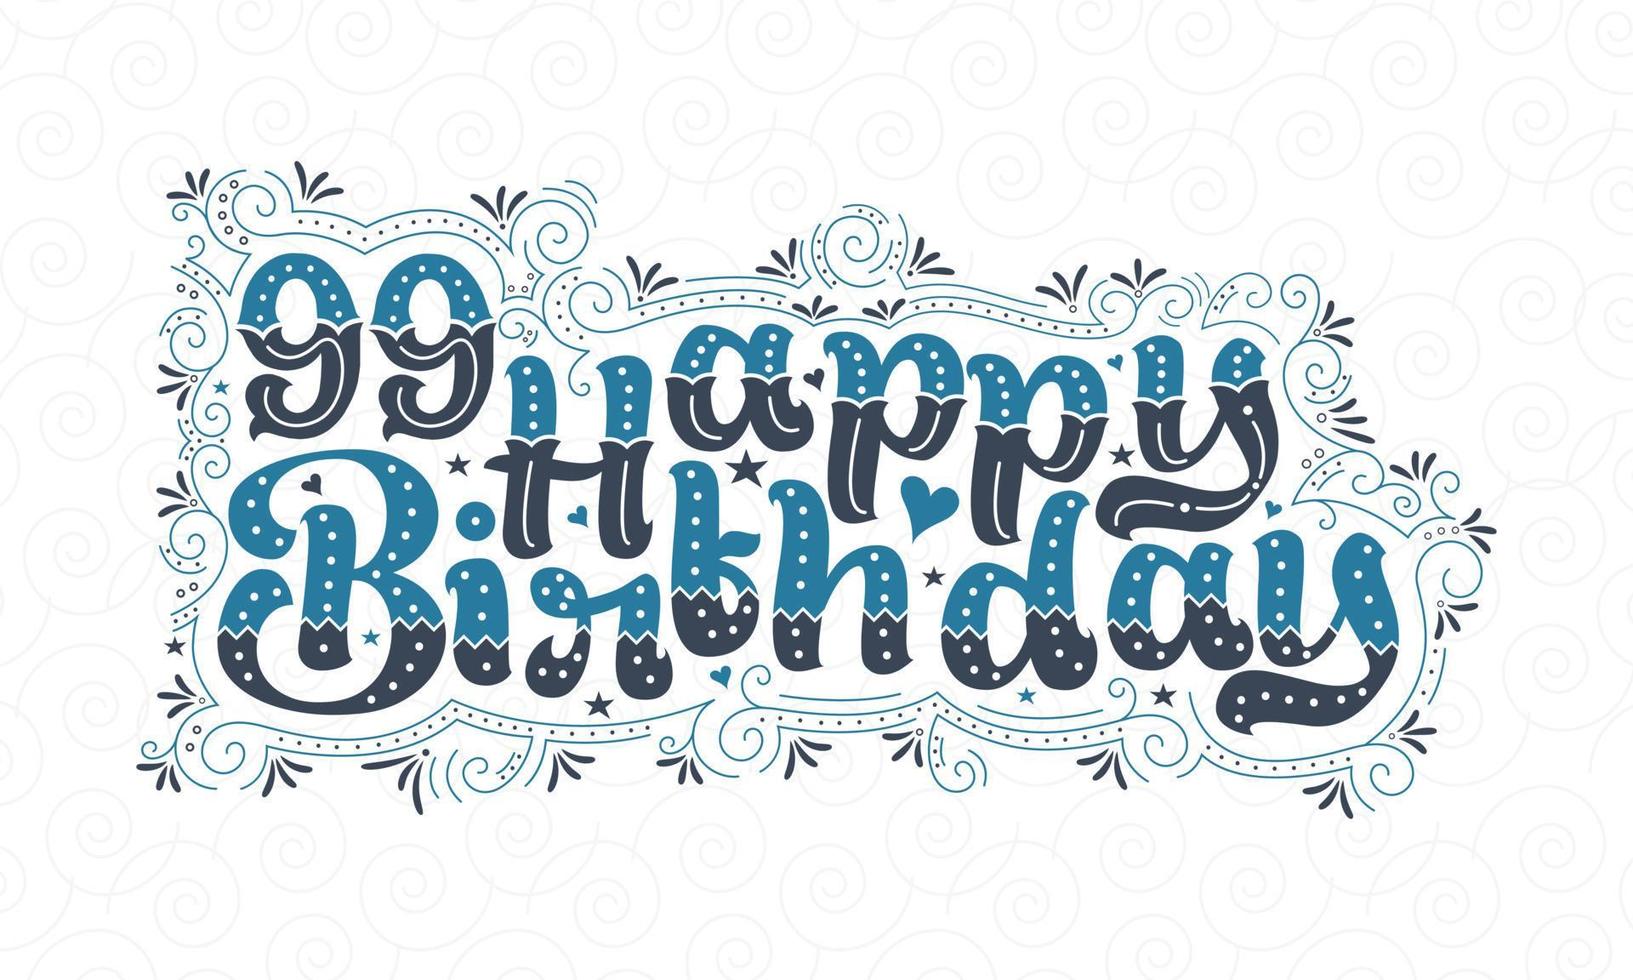 Letras de feliz cumpleaños 99, hermoso diseño tipográfico de cumpleaños de 99 años con puntos, líneas y hojas azules y negros. vector